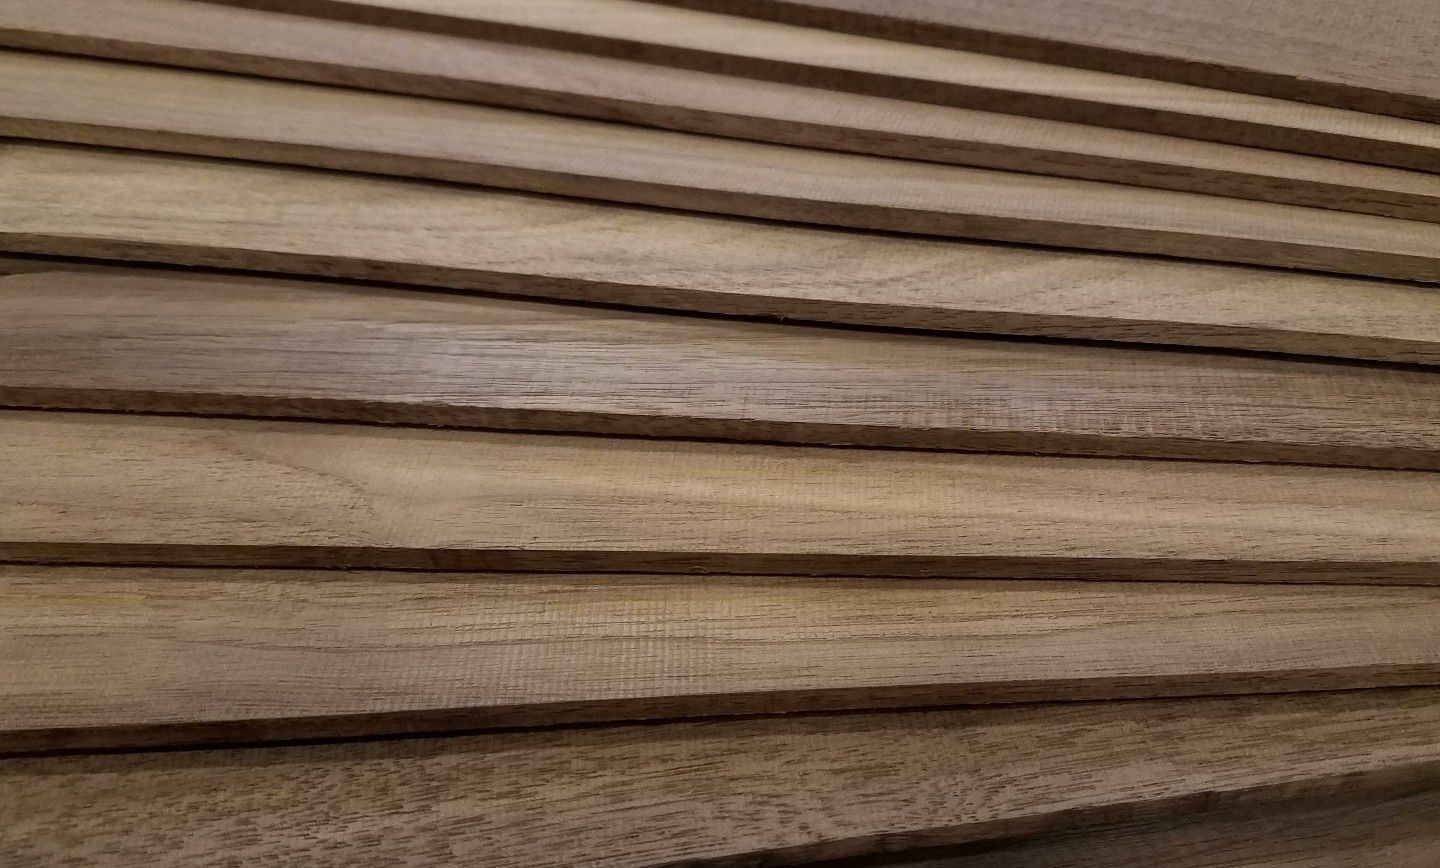 Black Walnut Thin Sawed Lumber  - 1/8" x 1.5" x 18" (20 Pcs)